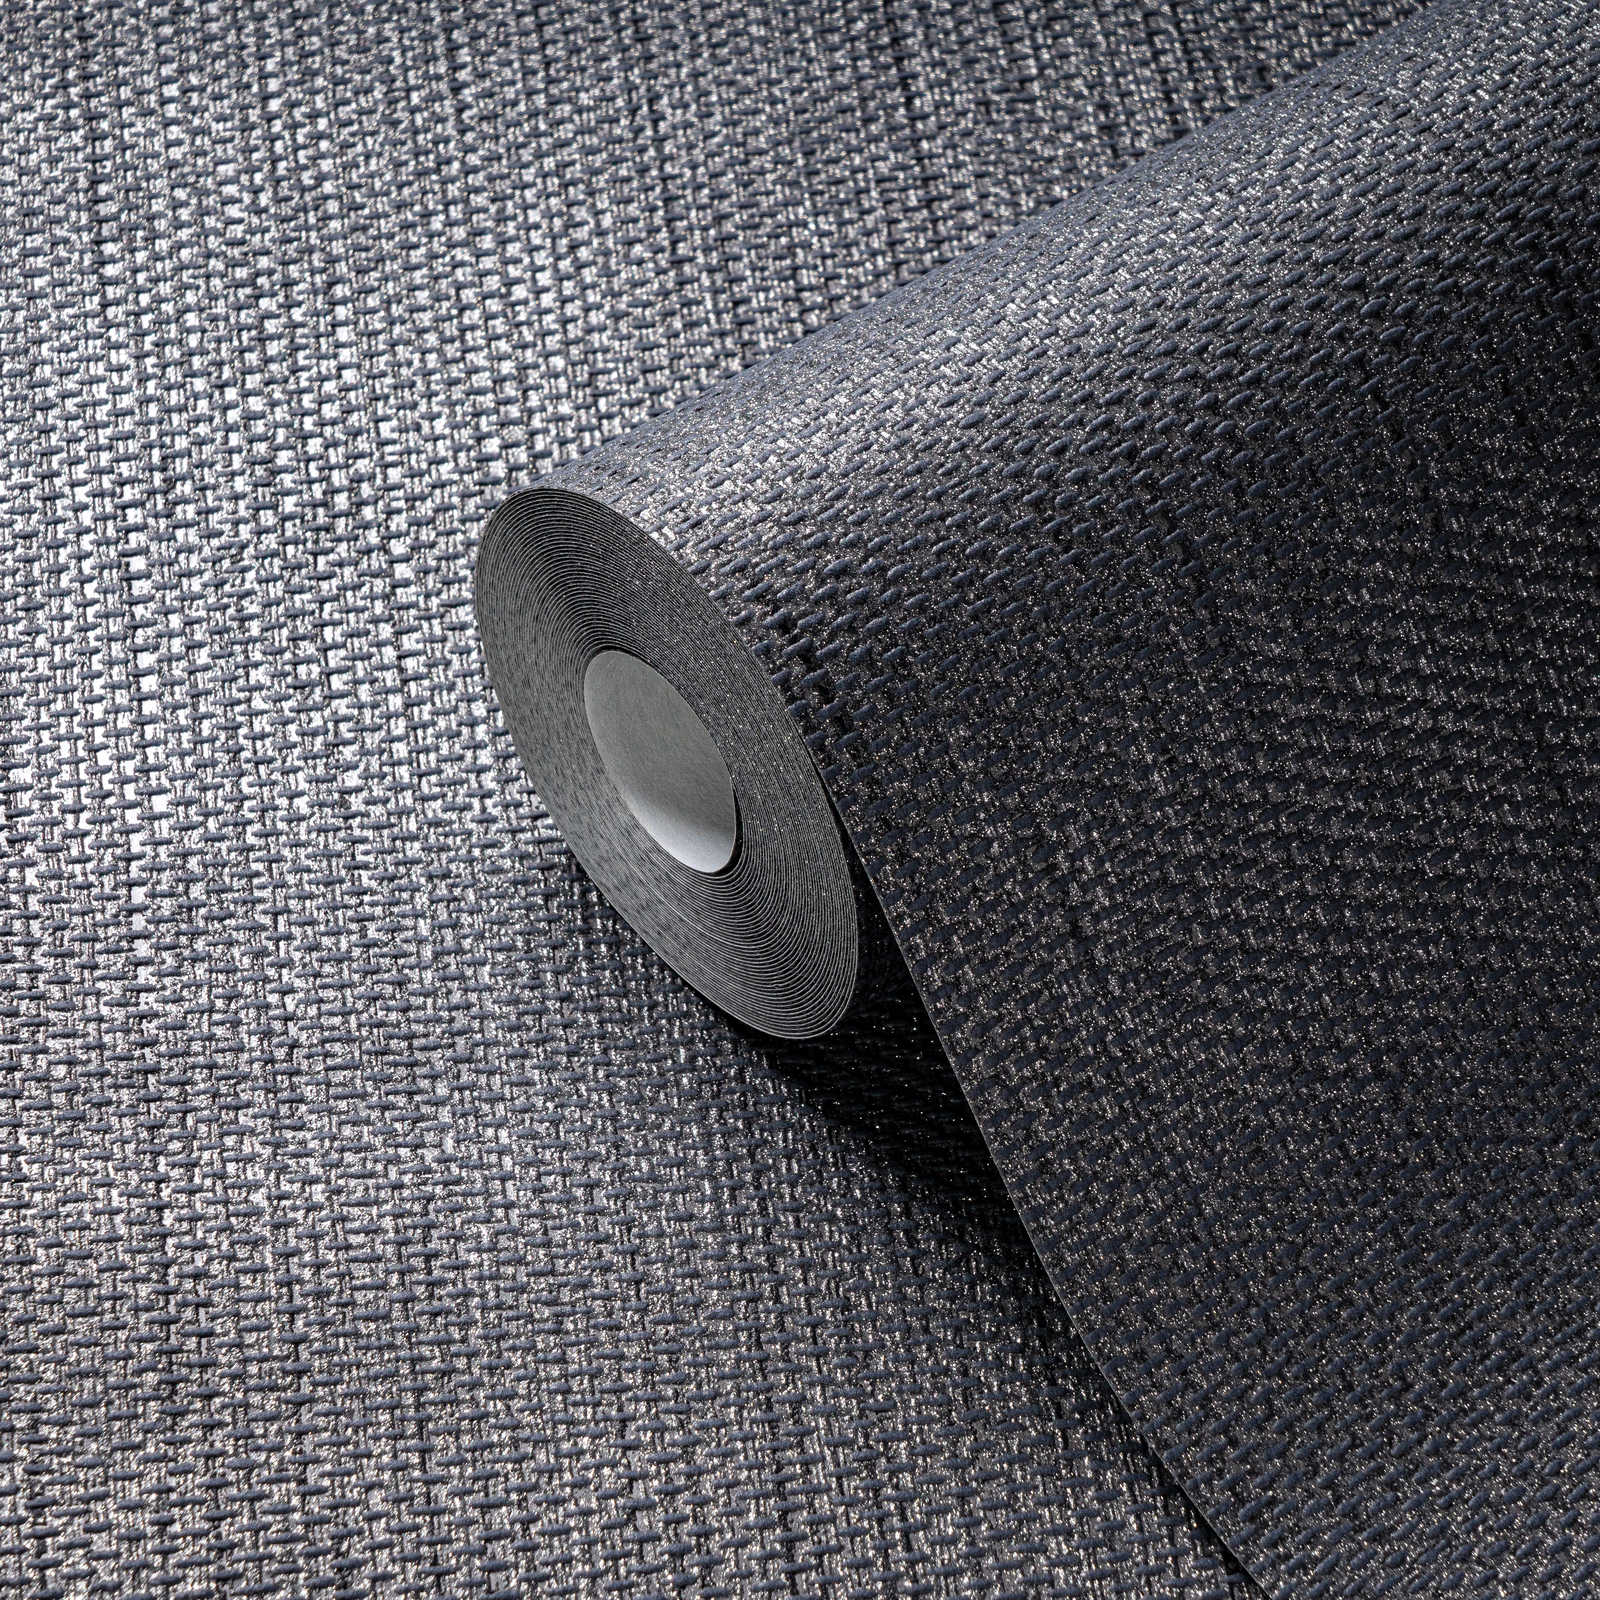             Carta da parati in lino con struttura tessile - grigio, nero
        